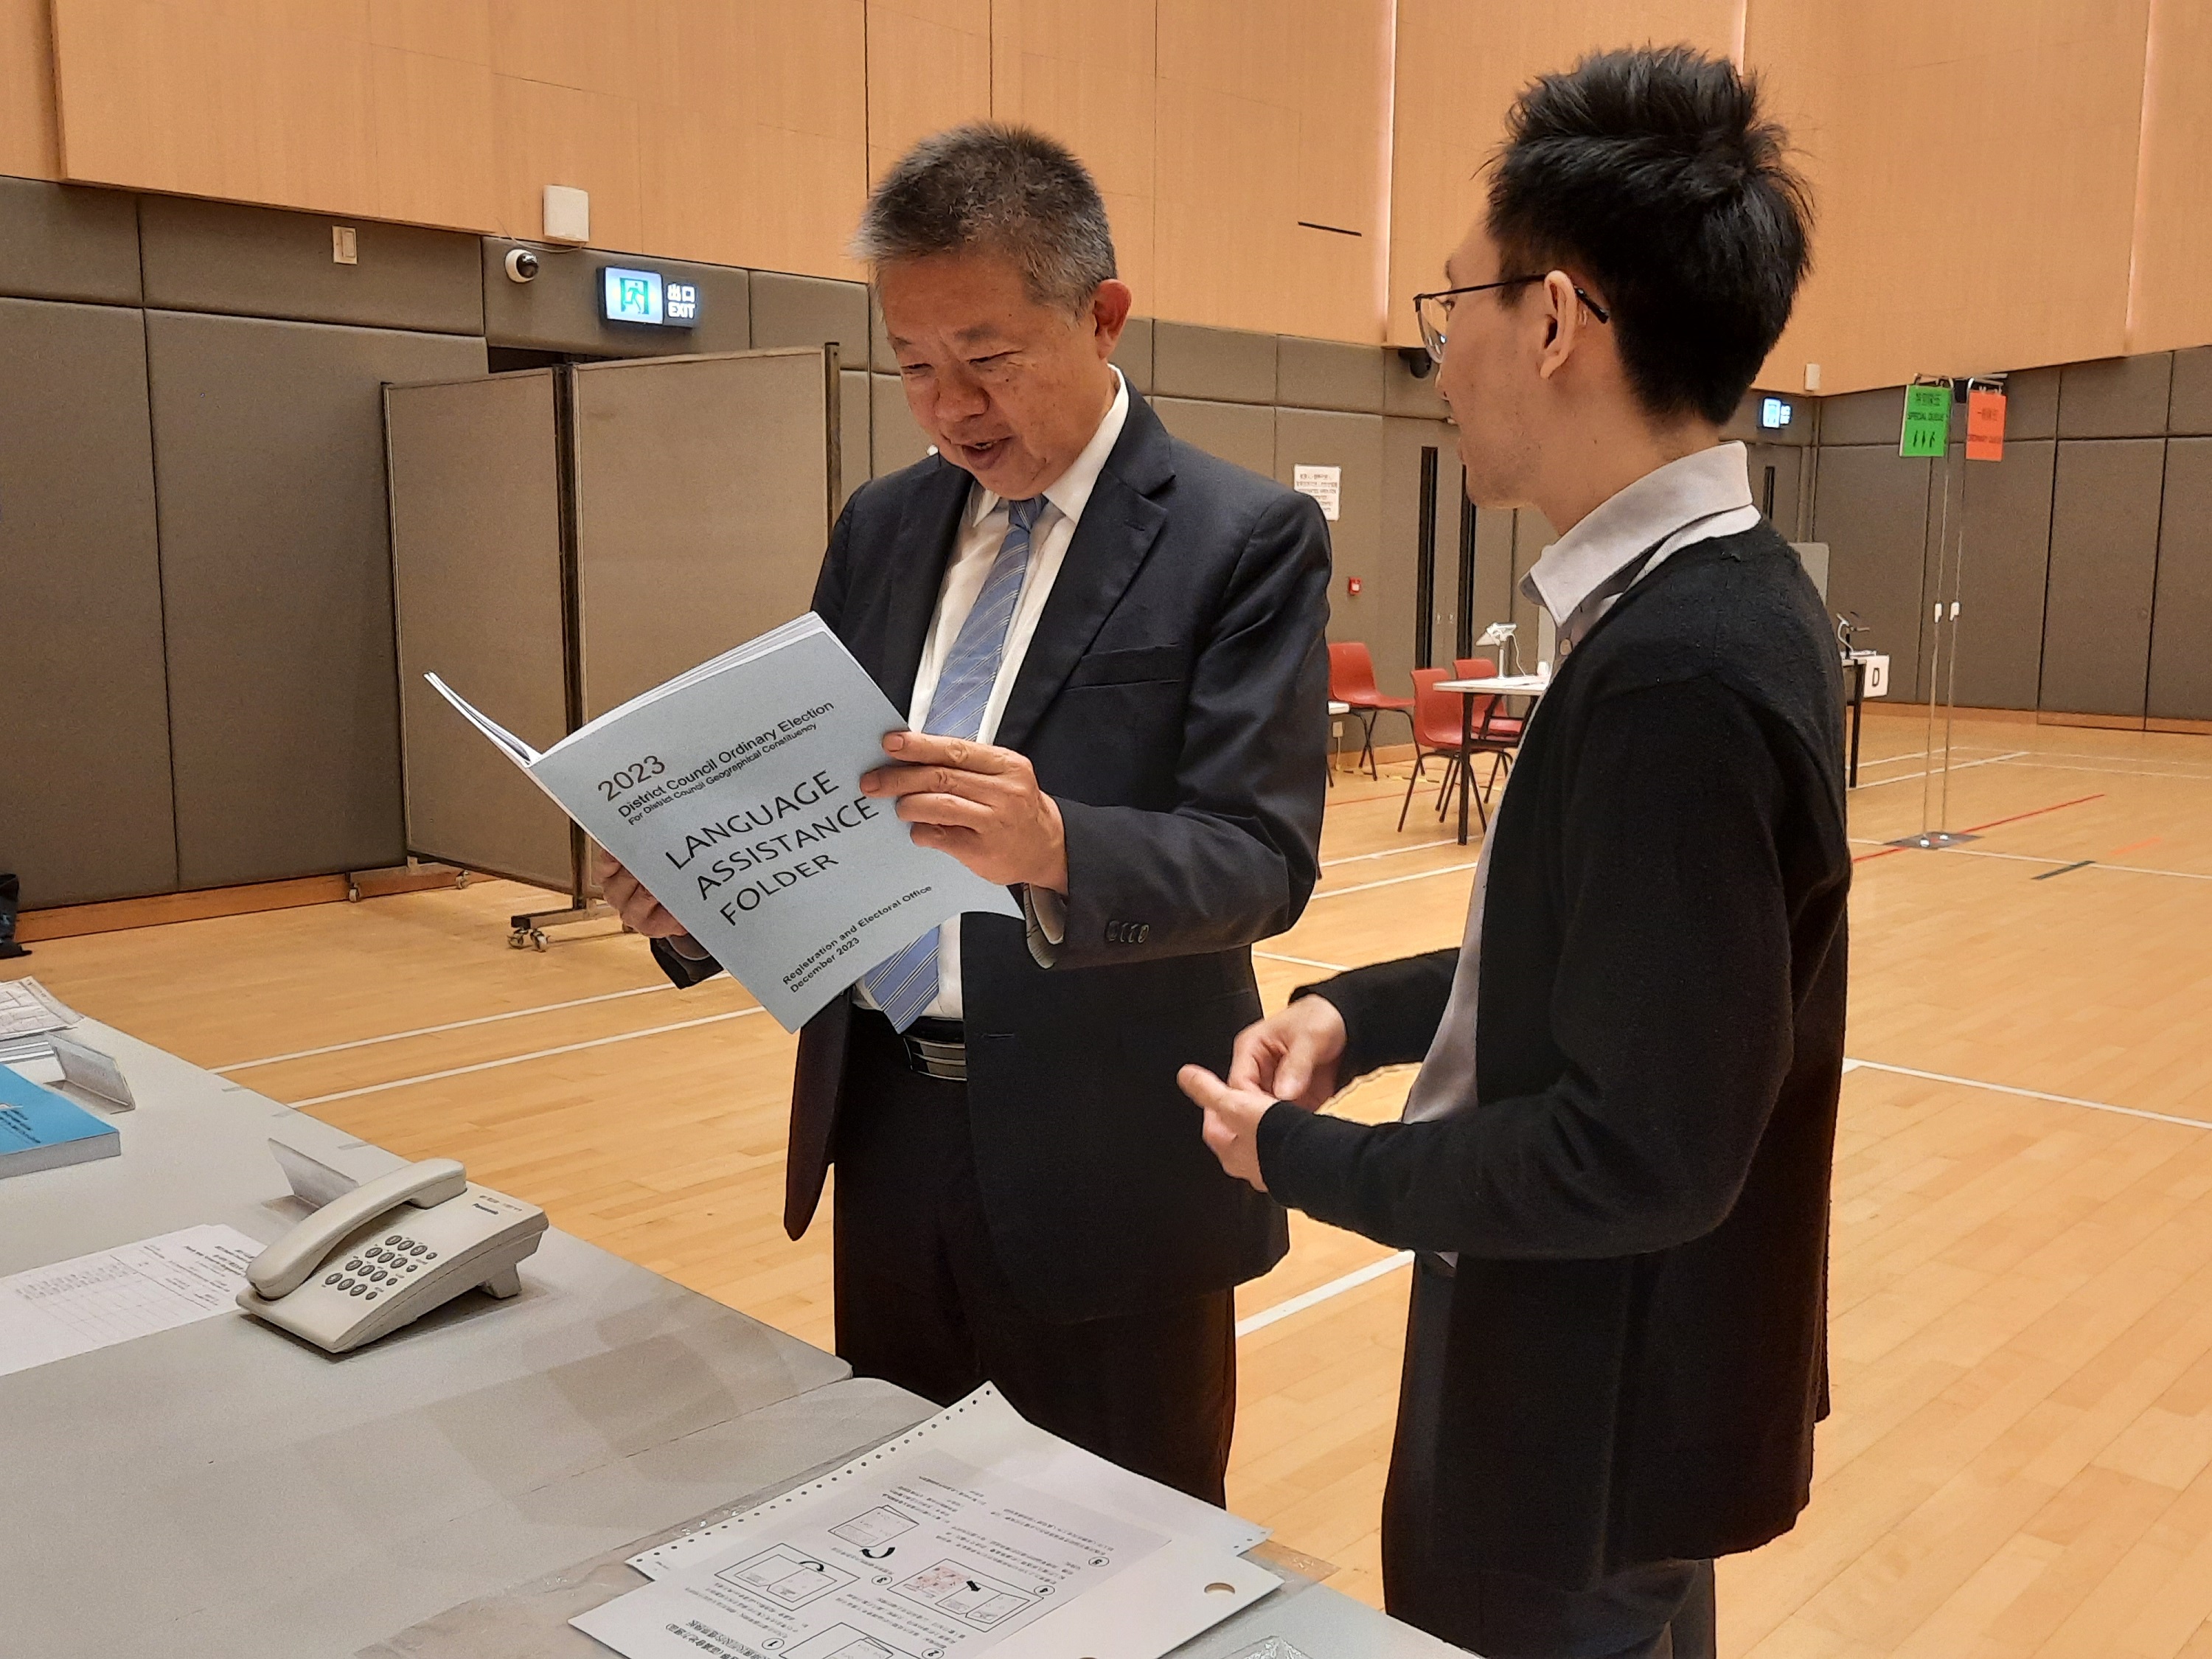 投票站備有的語言協助資料夾，除了中文、英文、日語和韓語外，還提供八種不同種族語言的投票程序指引，以協助不同種族的選民投票。